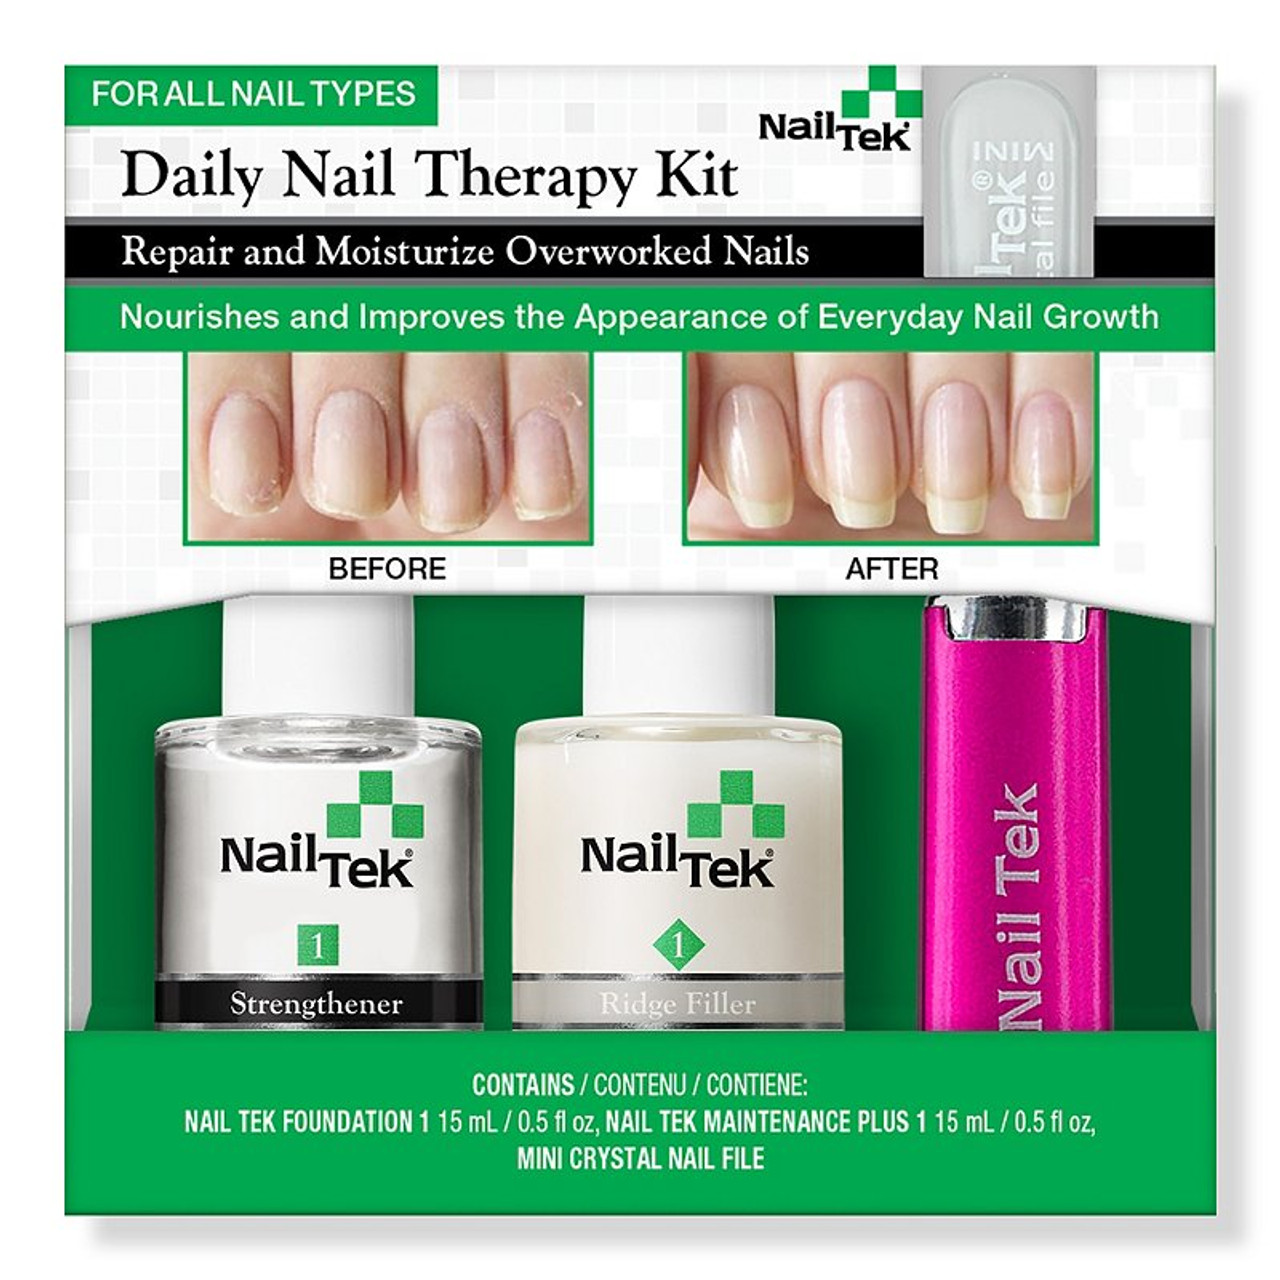 Nail Tek Daily Nail Therapy Kit